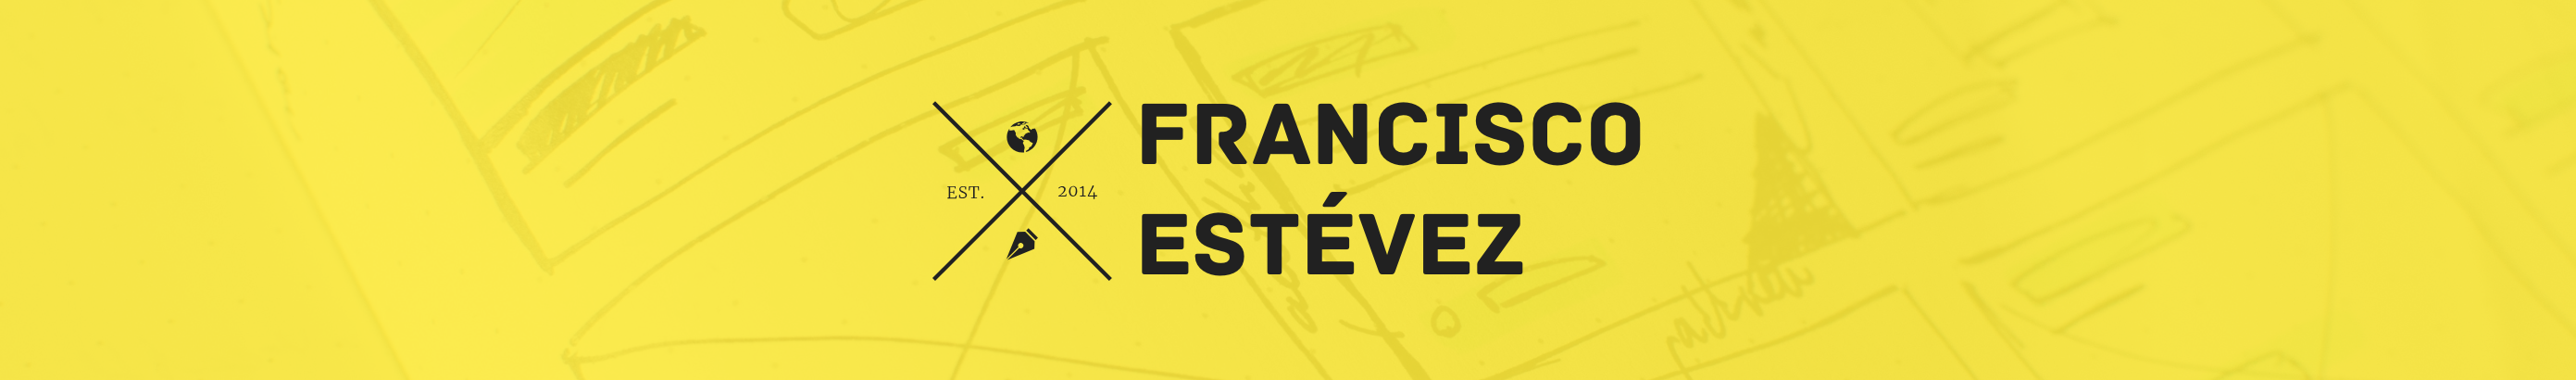 Francisco Estévez's profile banner